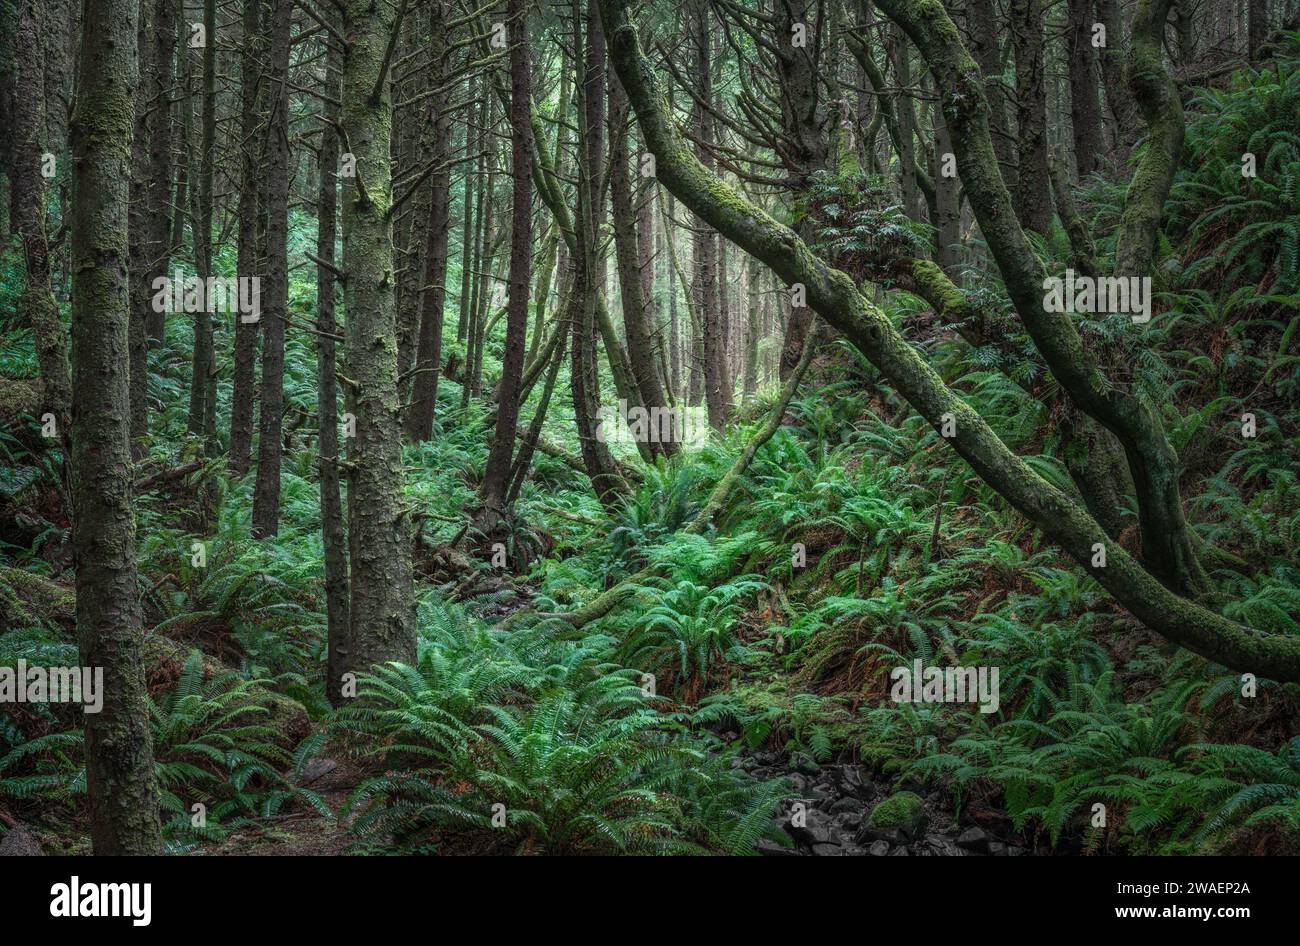 Una vista panoramica di una lussureggiante foresta pluviale con alberi verdi Foto Stock